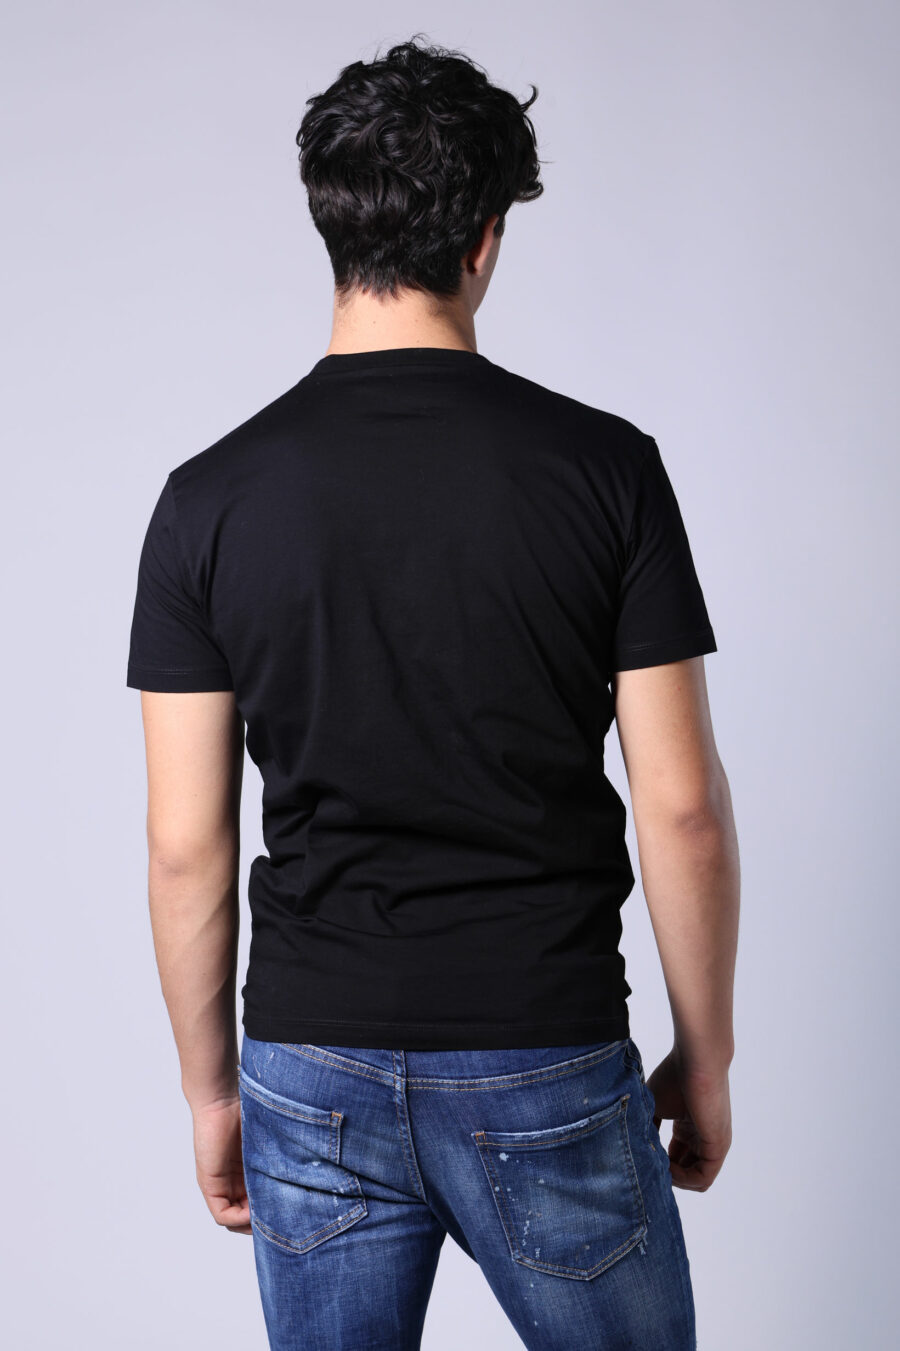 Black t-shirt with white "university" maxi logo - Untitled Catalog 05241